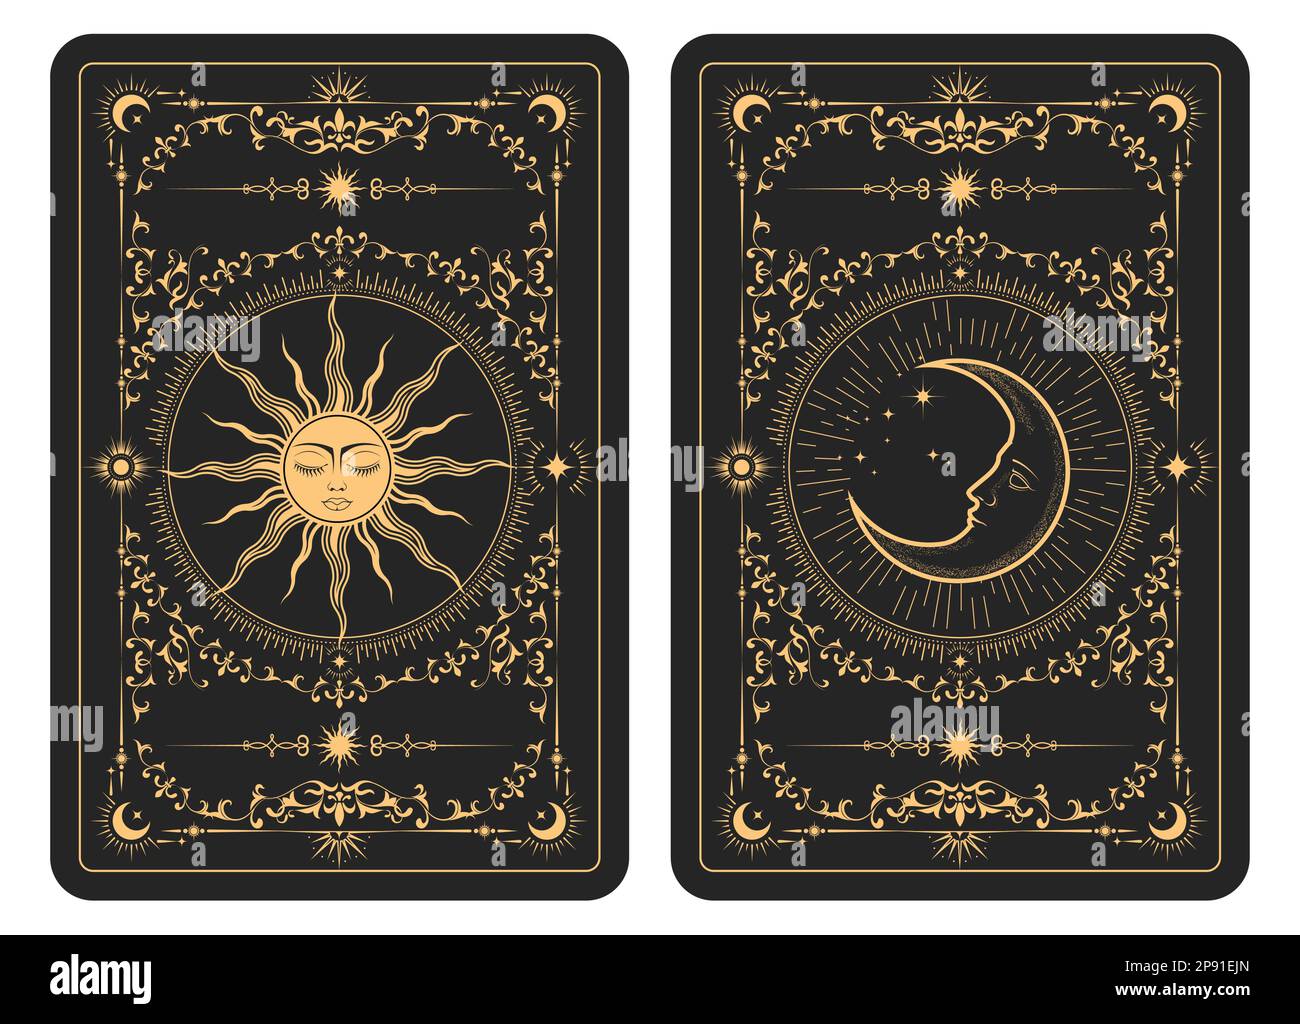 Il lato opposto di un lotto di carte tarocchi, modello con sole e luna mistica, simboli esoterici di mezza luna e astrologia, vettore Illustrazione Vettoriale